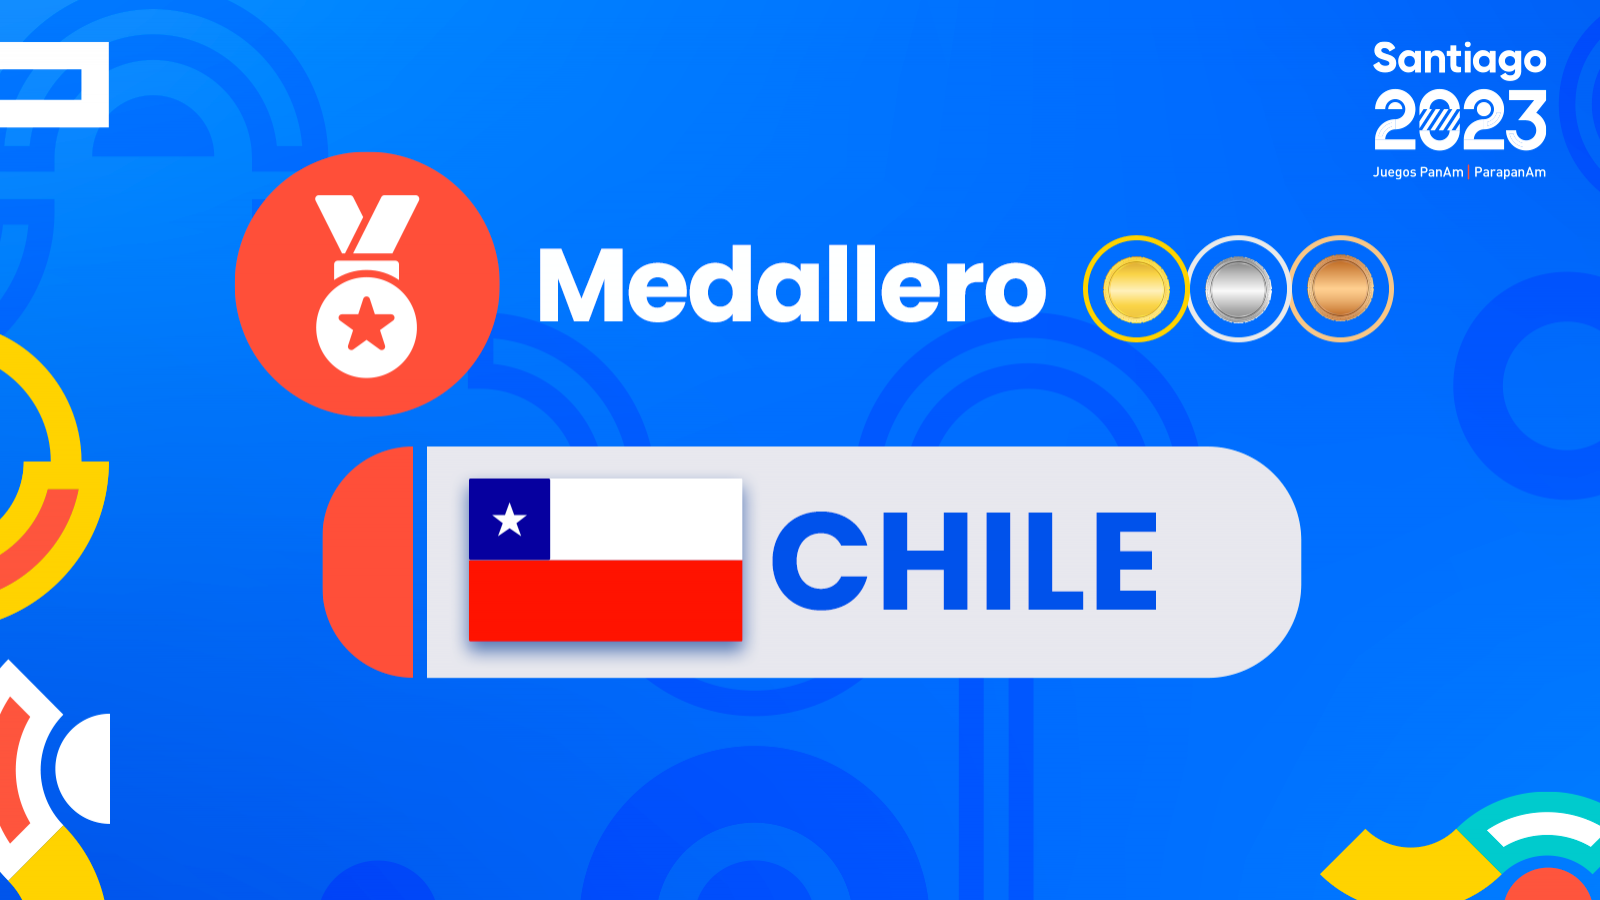 Medallero Chile juegos panamericanos Santiago 2023.